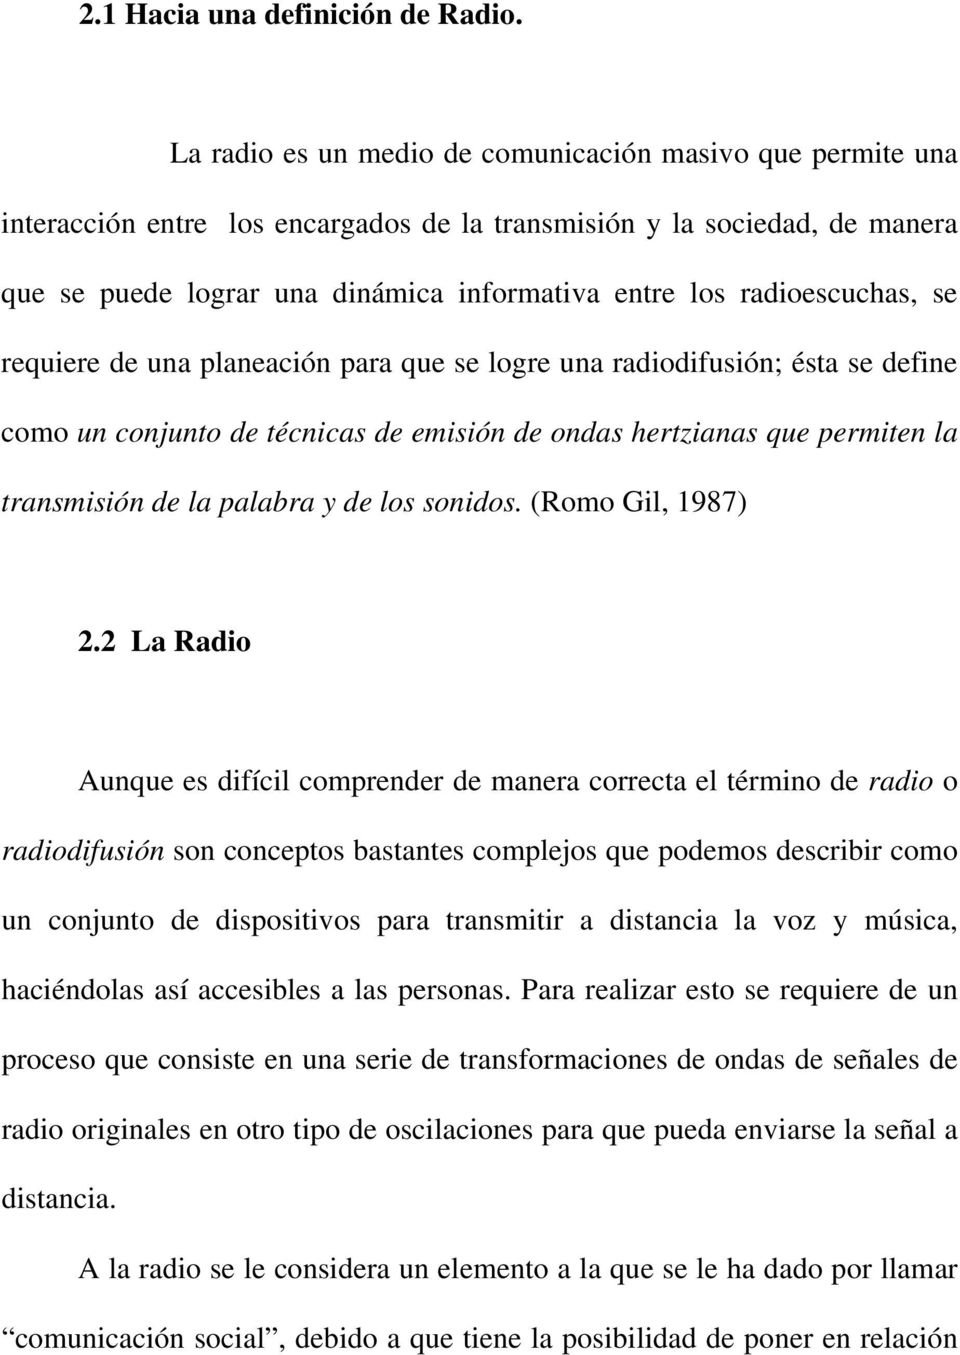 radioescuchas, se requiere de una planeación para que se logre una radiodifusión; ésta se define como un conjunto de técnicas de emisión de ondas hertzianas que permiten la transmisión de la palabra